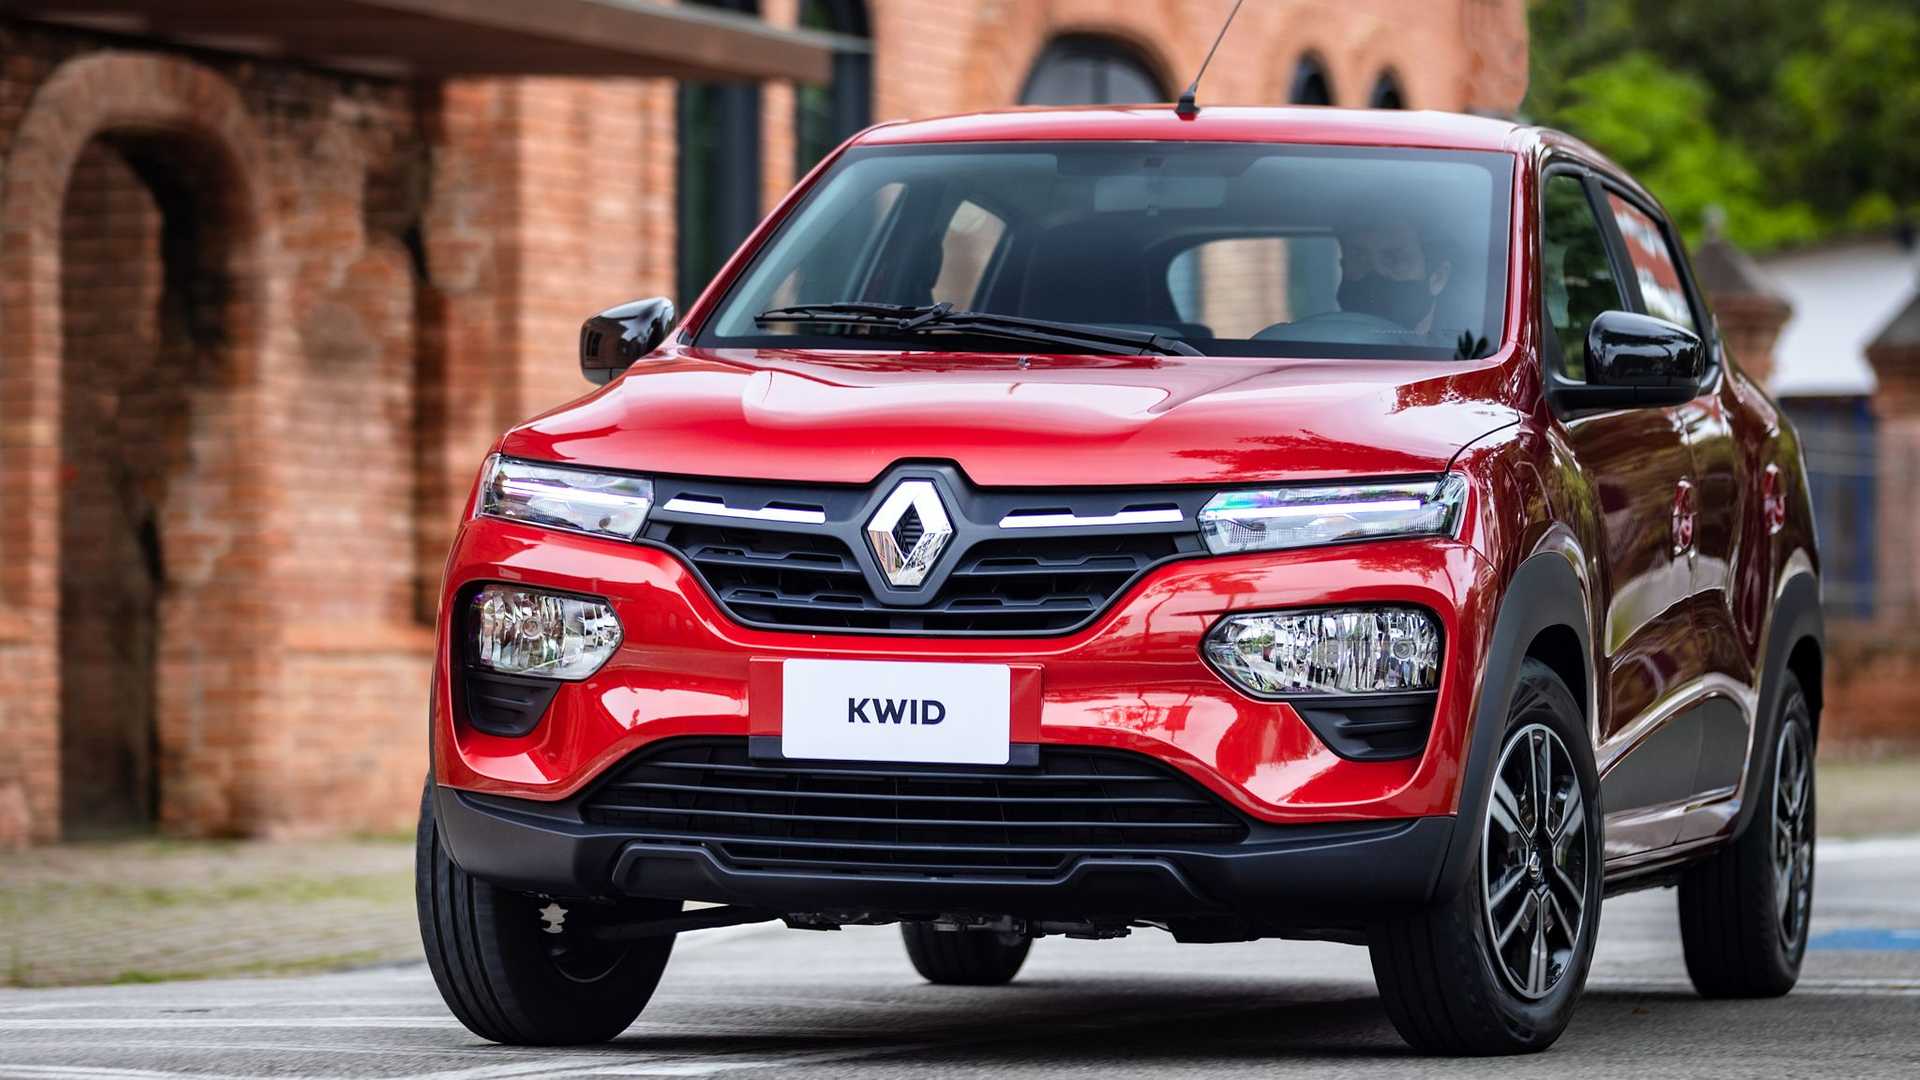 Renault Kwid x Fiat Mobi: qual é a melhor escolha entre os carros